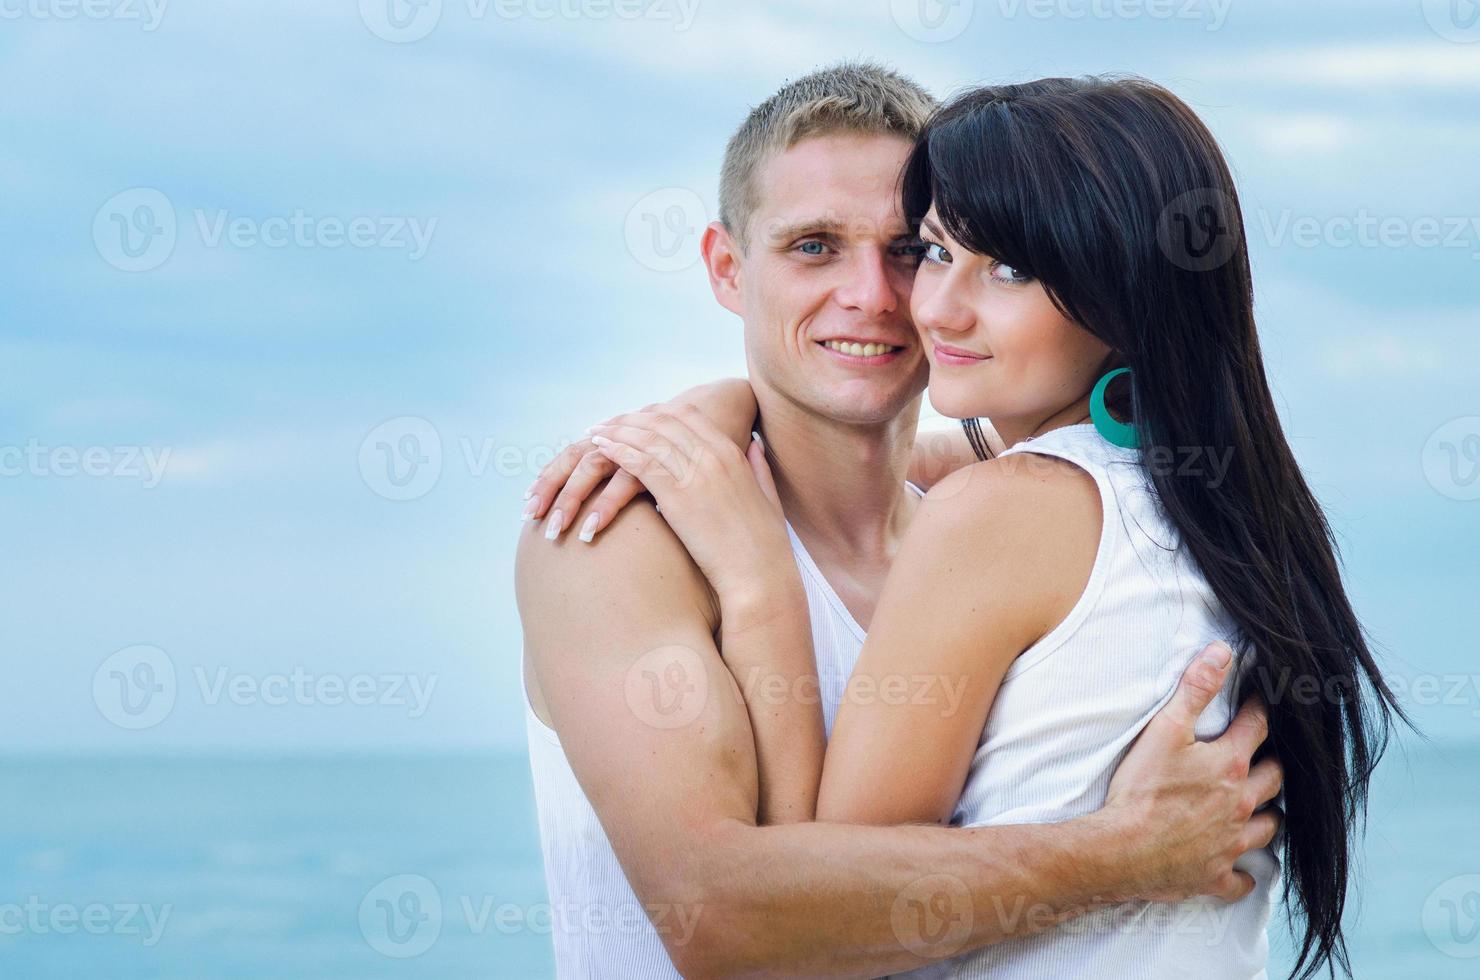 chico y una chica en jeans y camisetas blancas en la playa foto